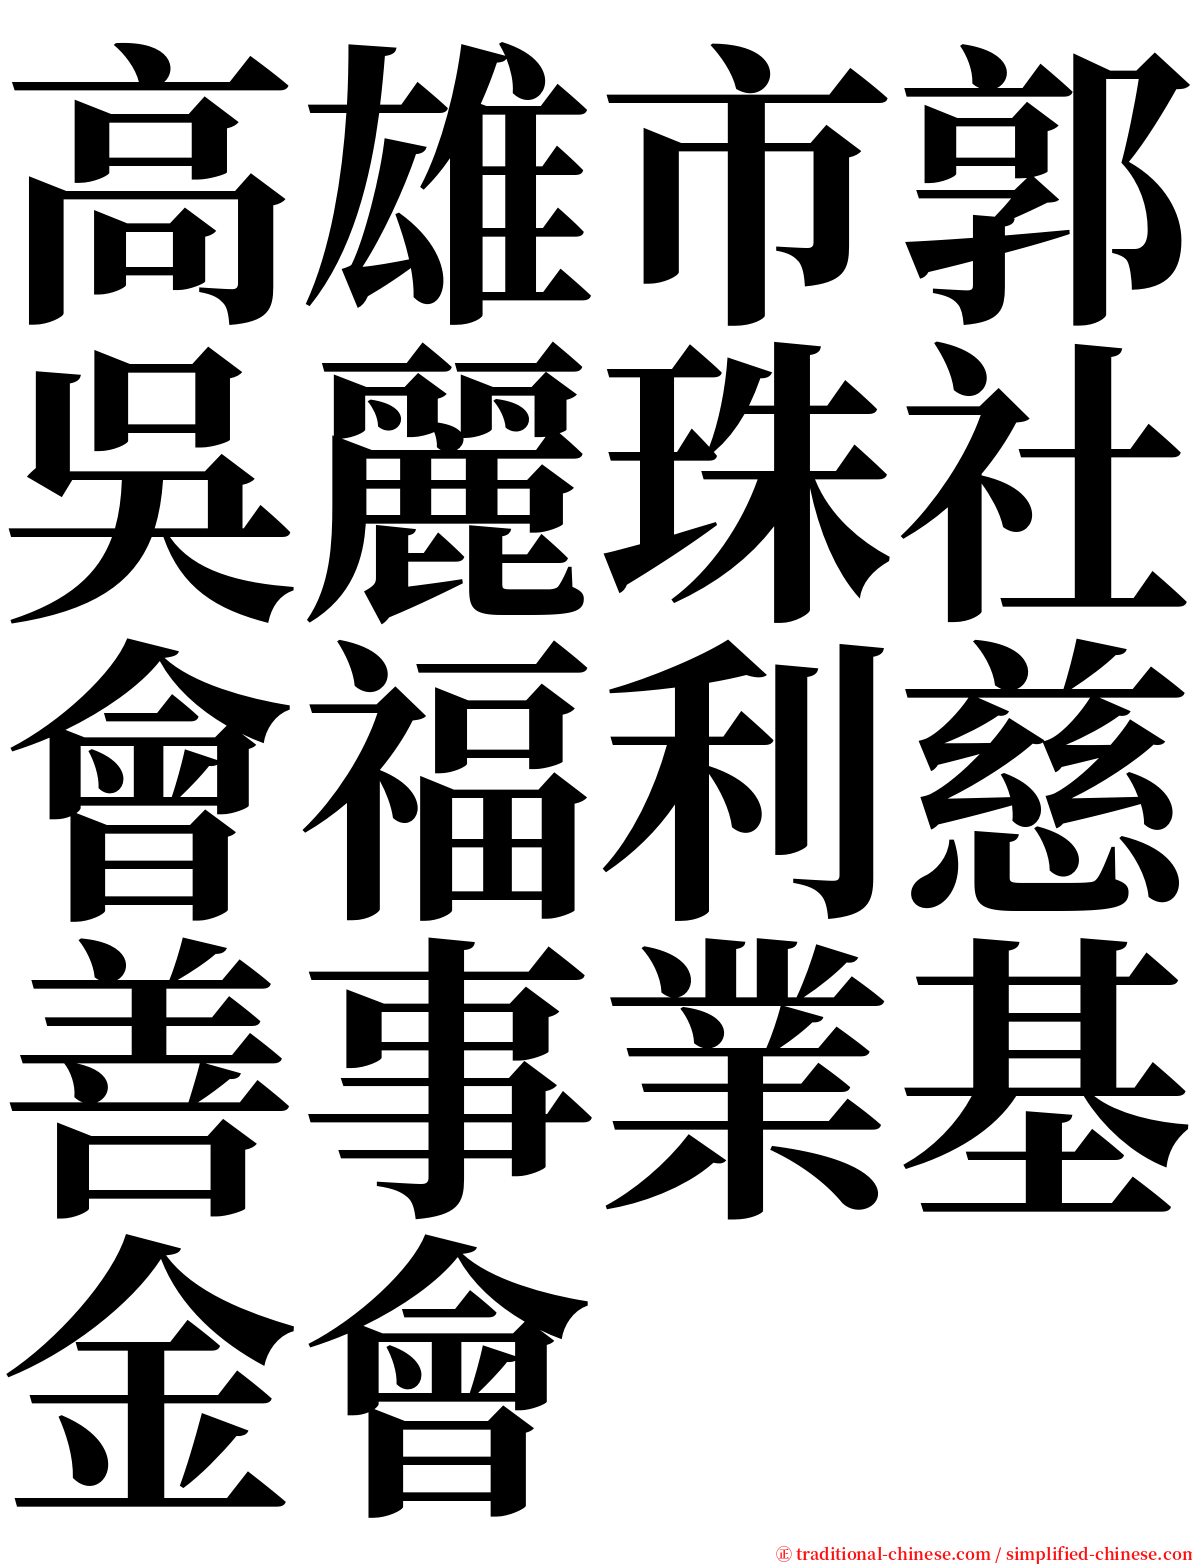 高雄市郭吳麗珠社會福利慈善事業基金會 serif font